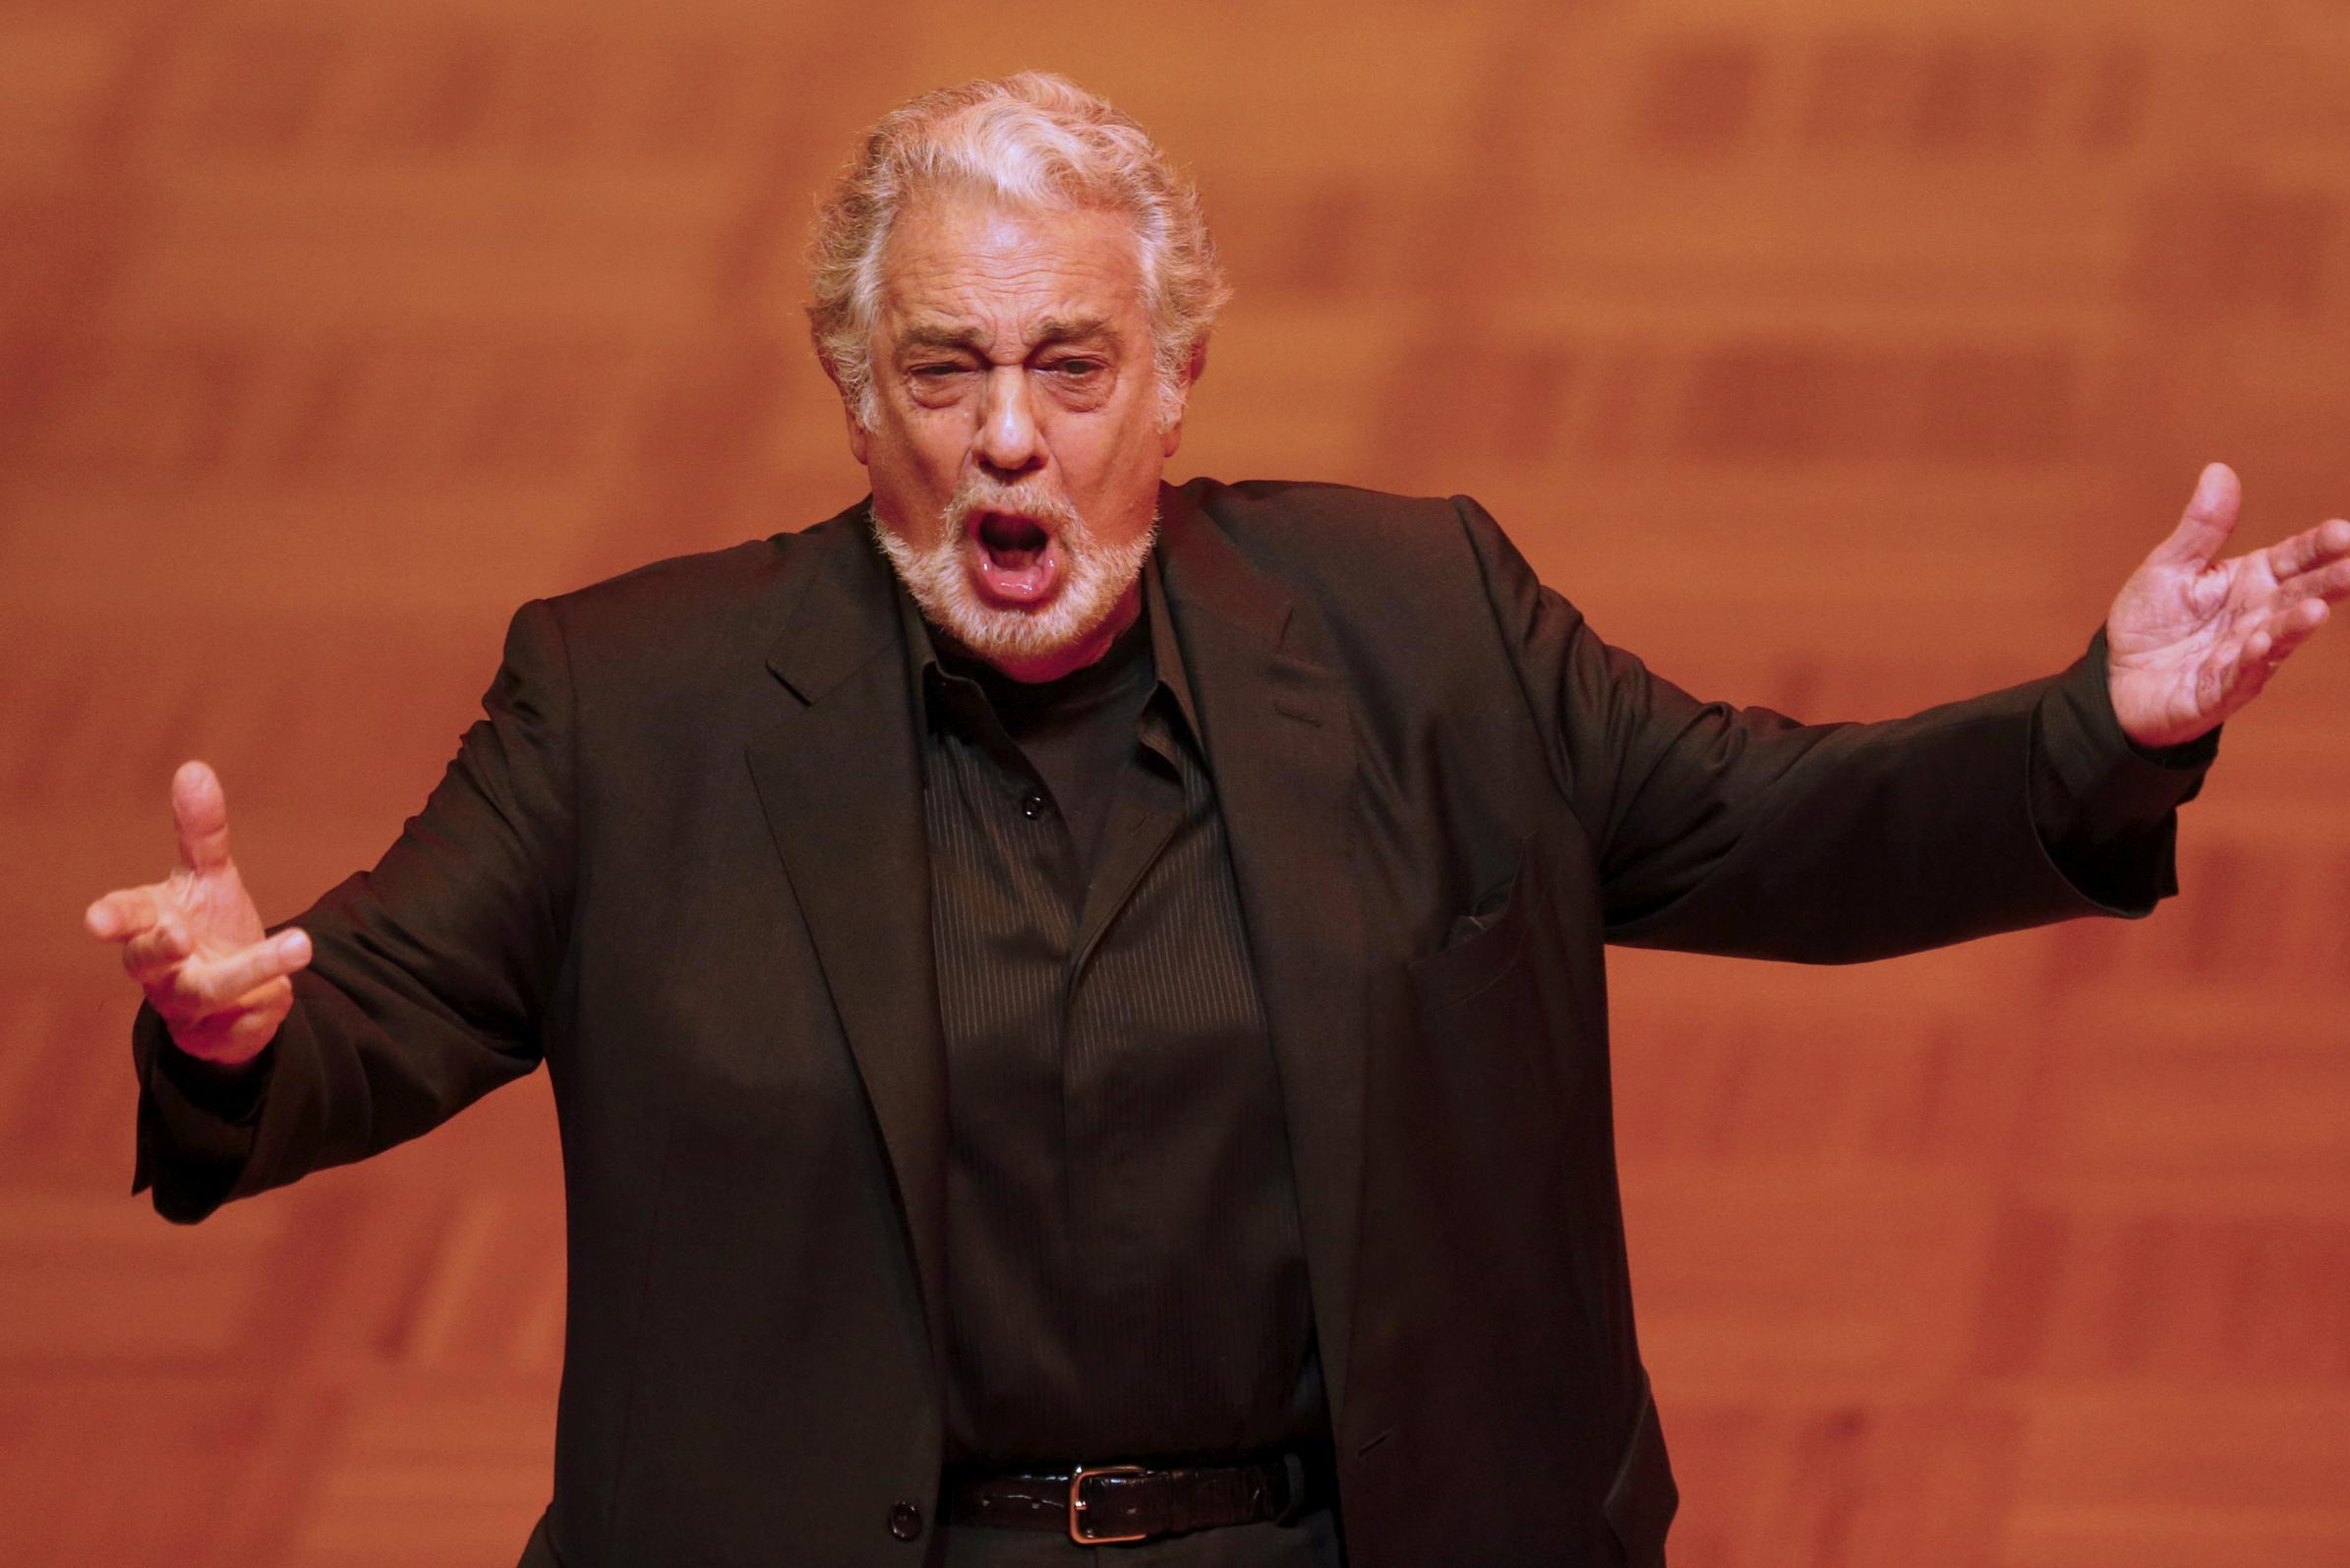 Muzikanten beschaamd over concert met Plácido Domingo: “Het was vernederend” - Gazet van Antwerpen